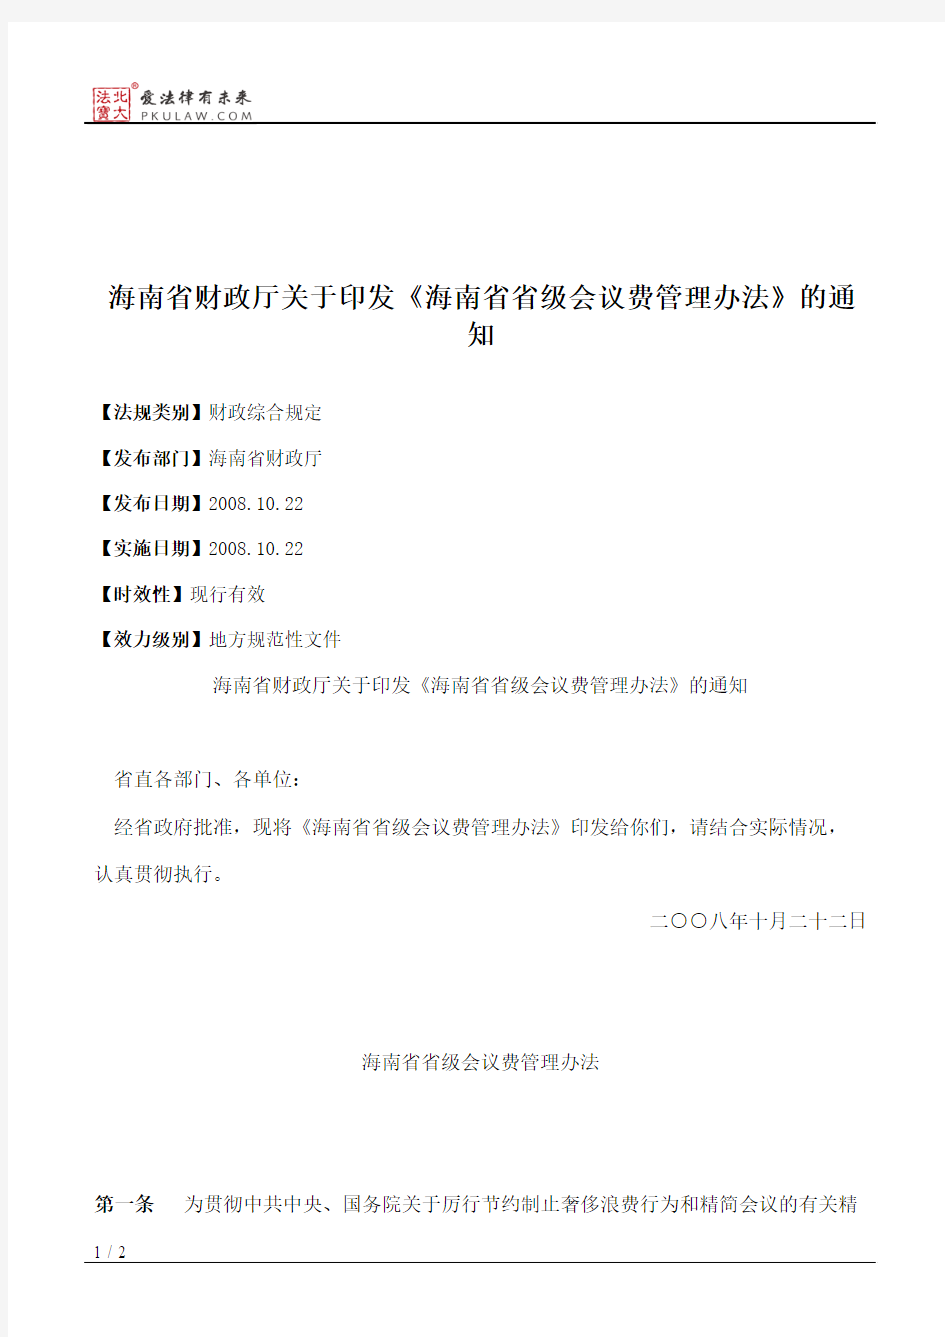 海南省财政厅关于印发《海南省省级会议费管理办法》的通知